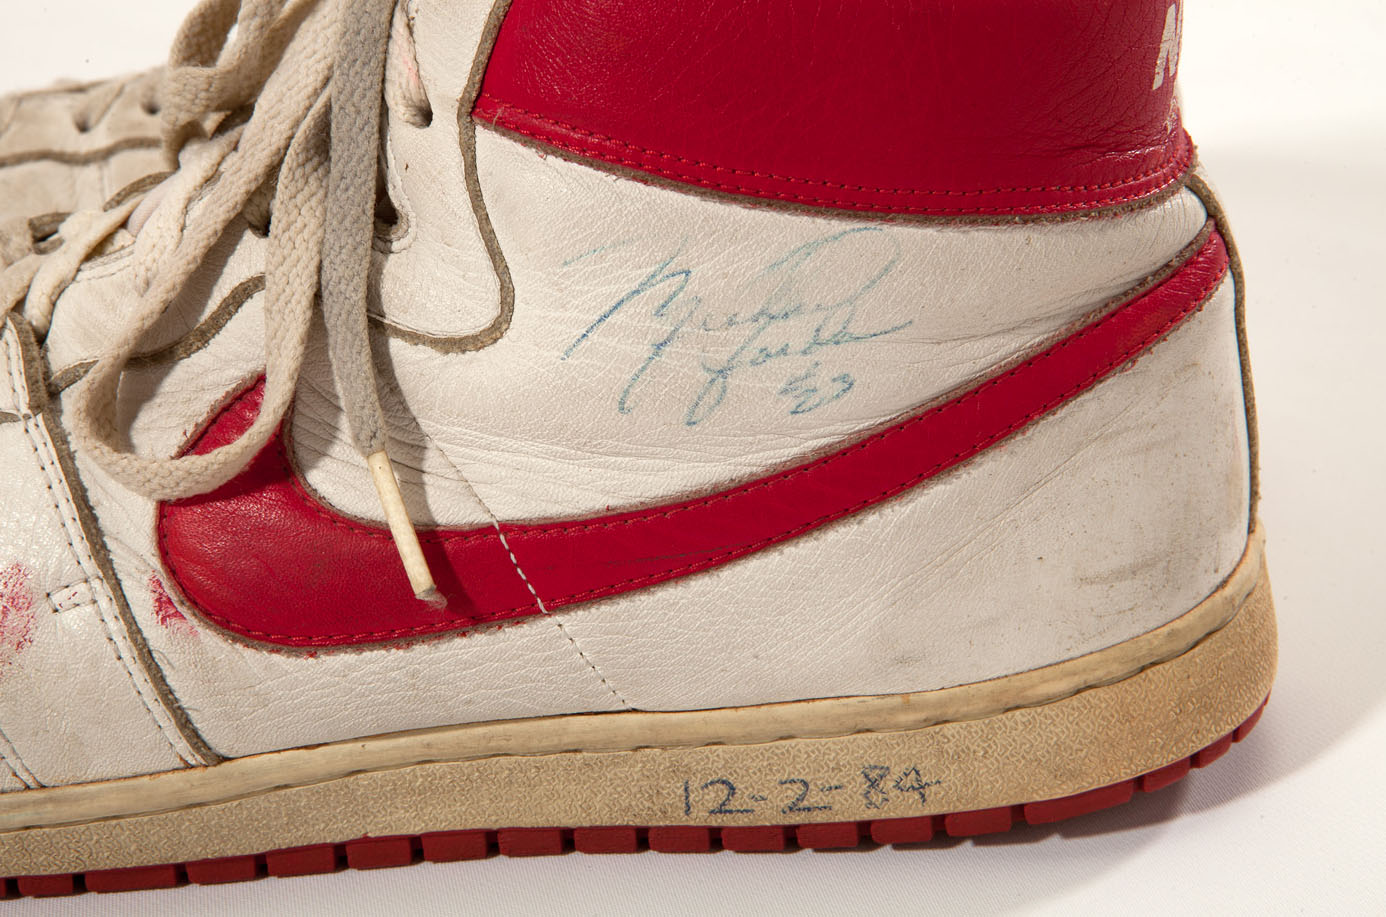 Michael Jordan's Game Worn Nike Air Ship Sneakers Sell For $71,554